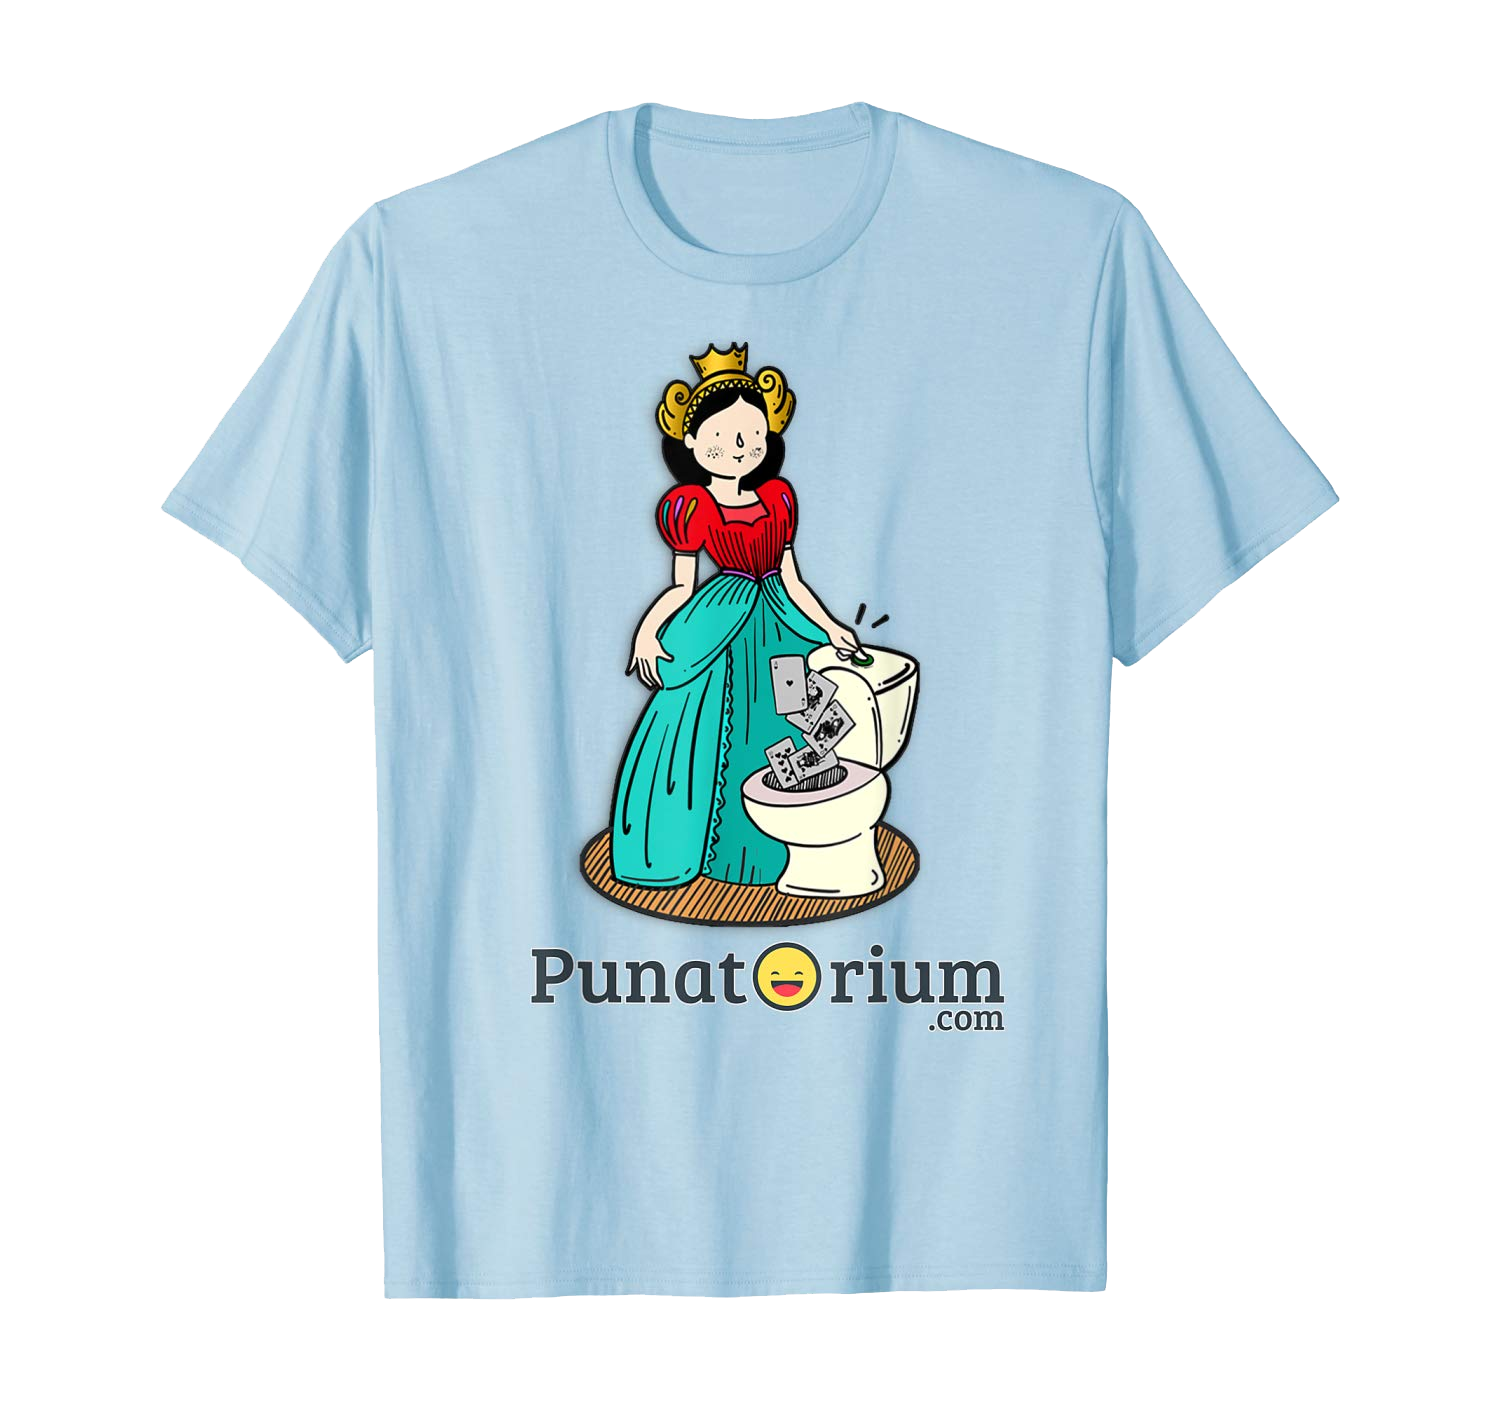 Queen royal flush t-shirt